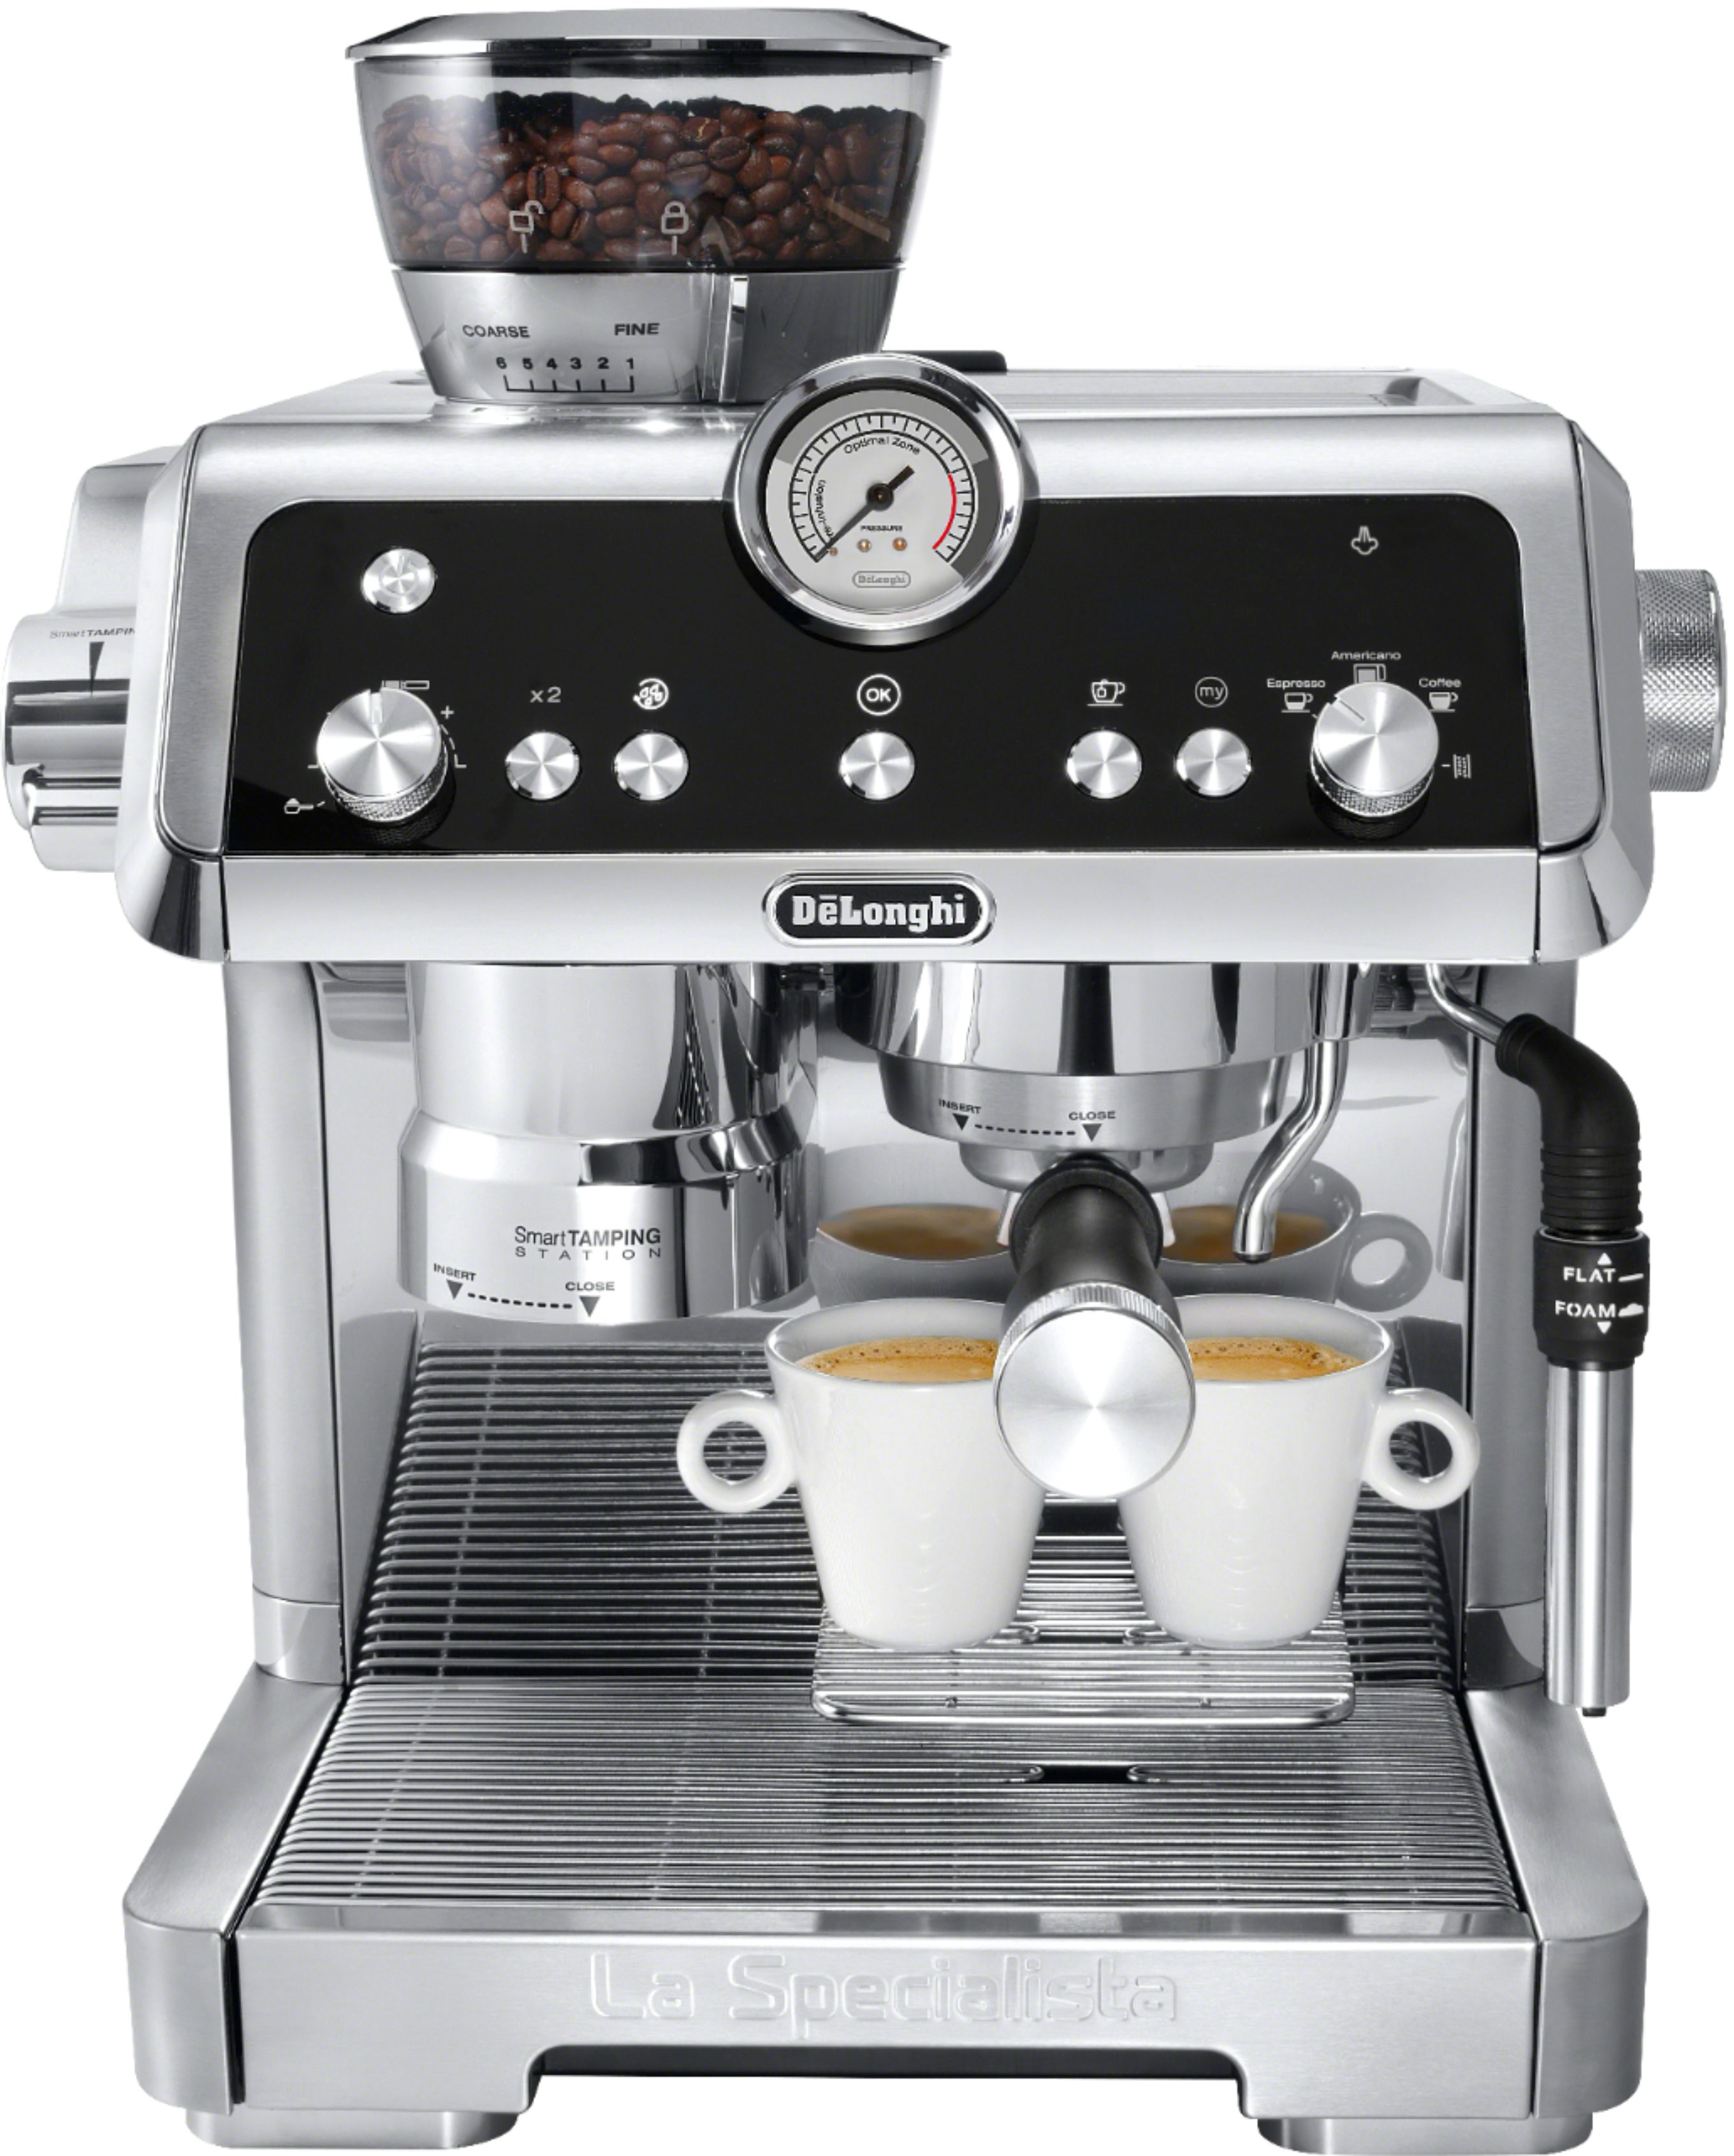 DeLonghi Espresso & Coffee Machine for Sale in Woodland, CA